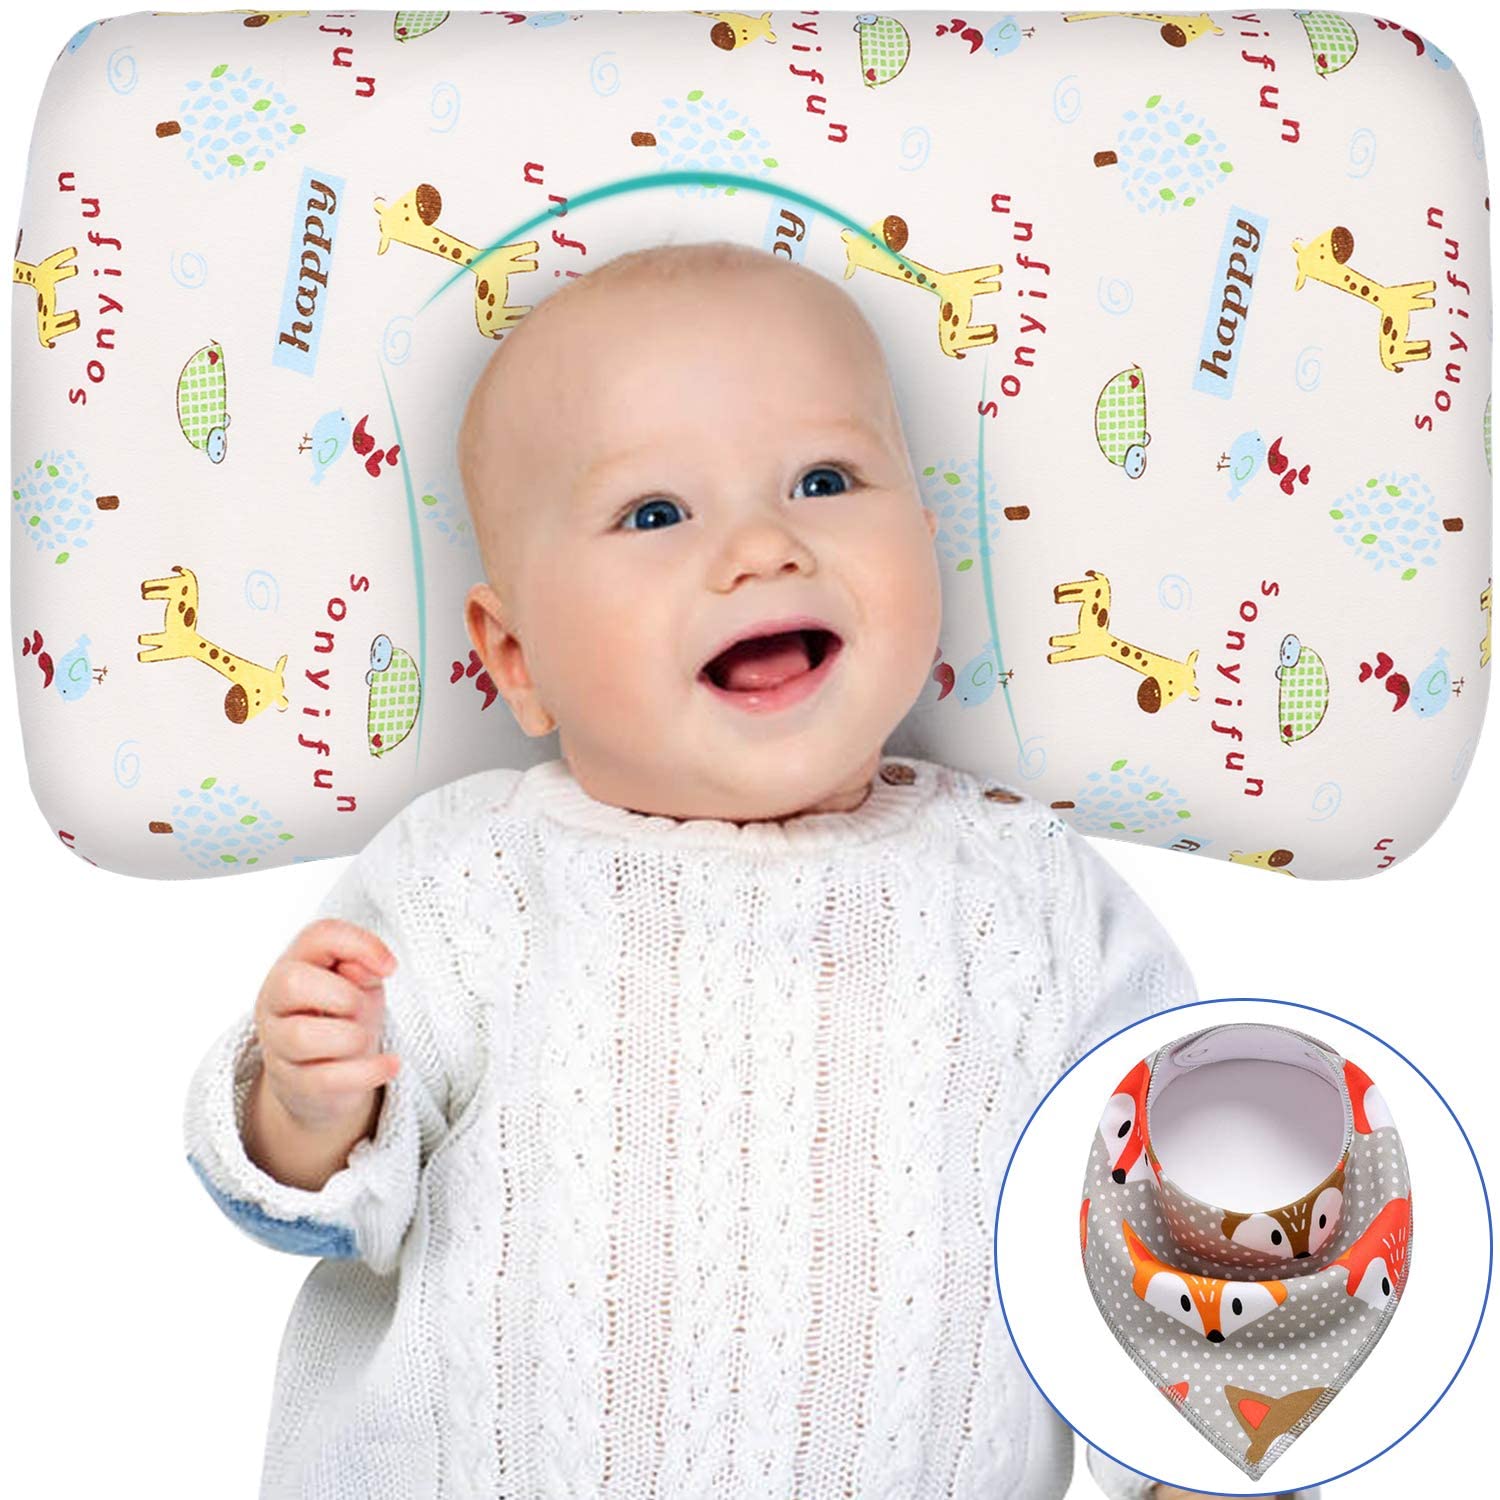 Little Poppetz Newborn Memory Foam Baby Pillow Ultra Soft Infant Head Support 